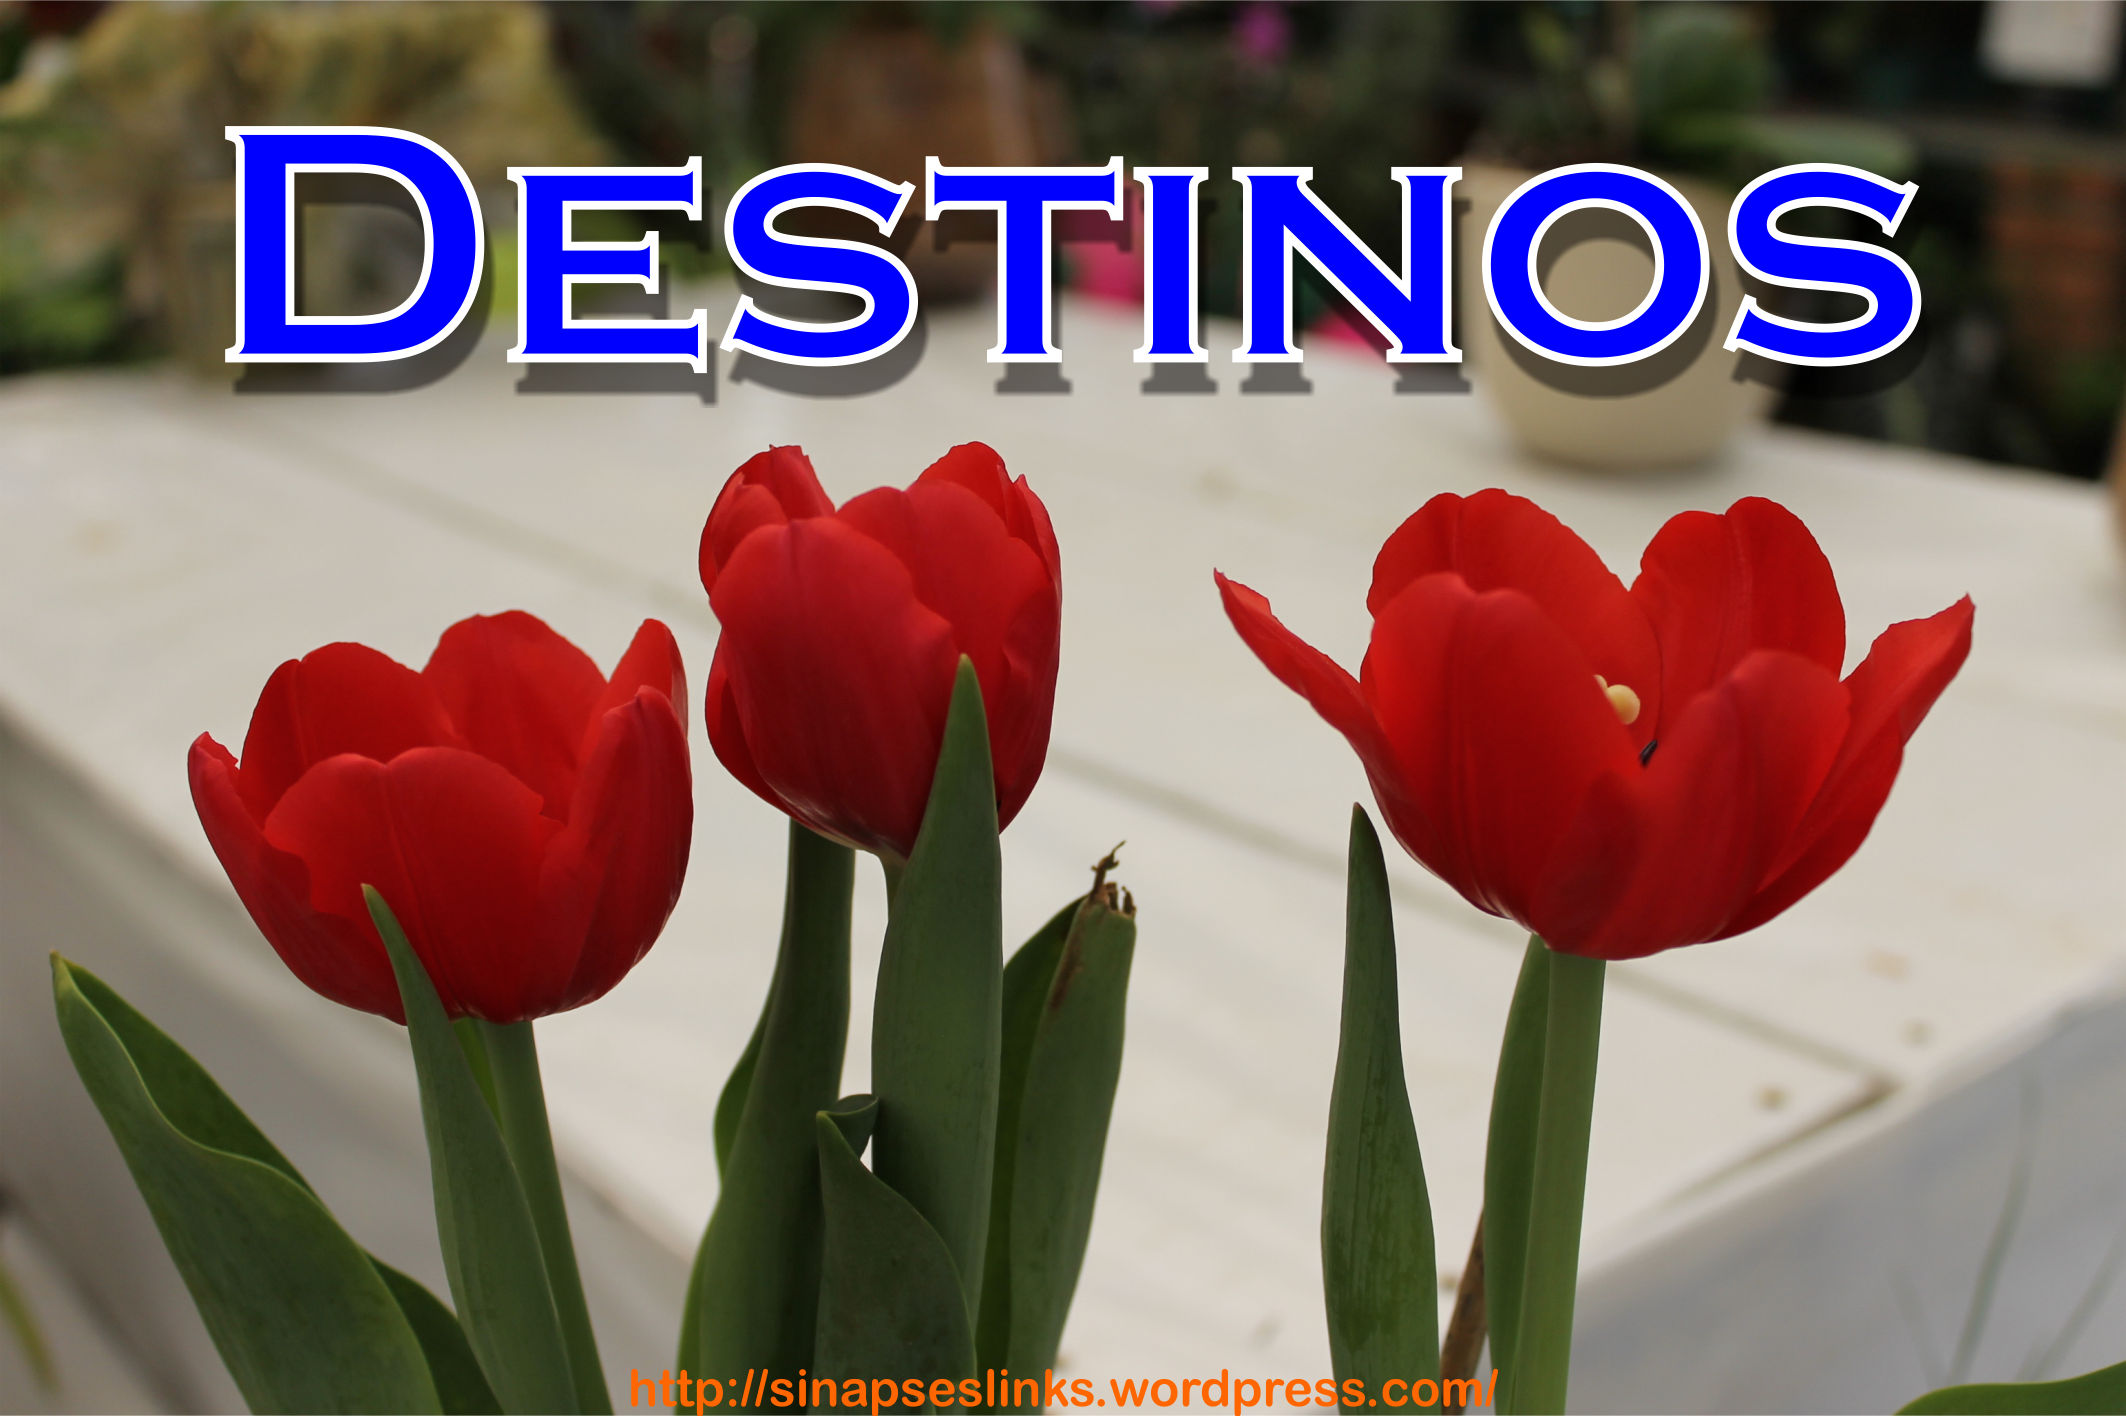 20130113_Destinos